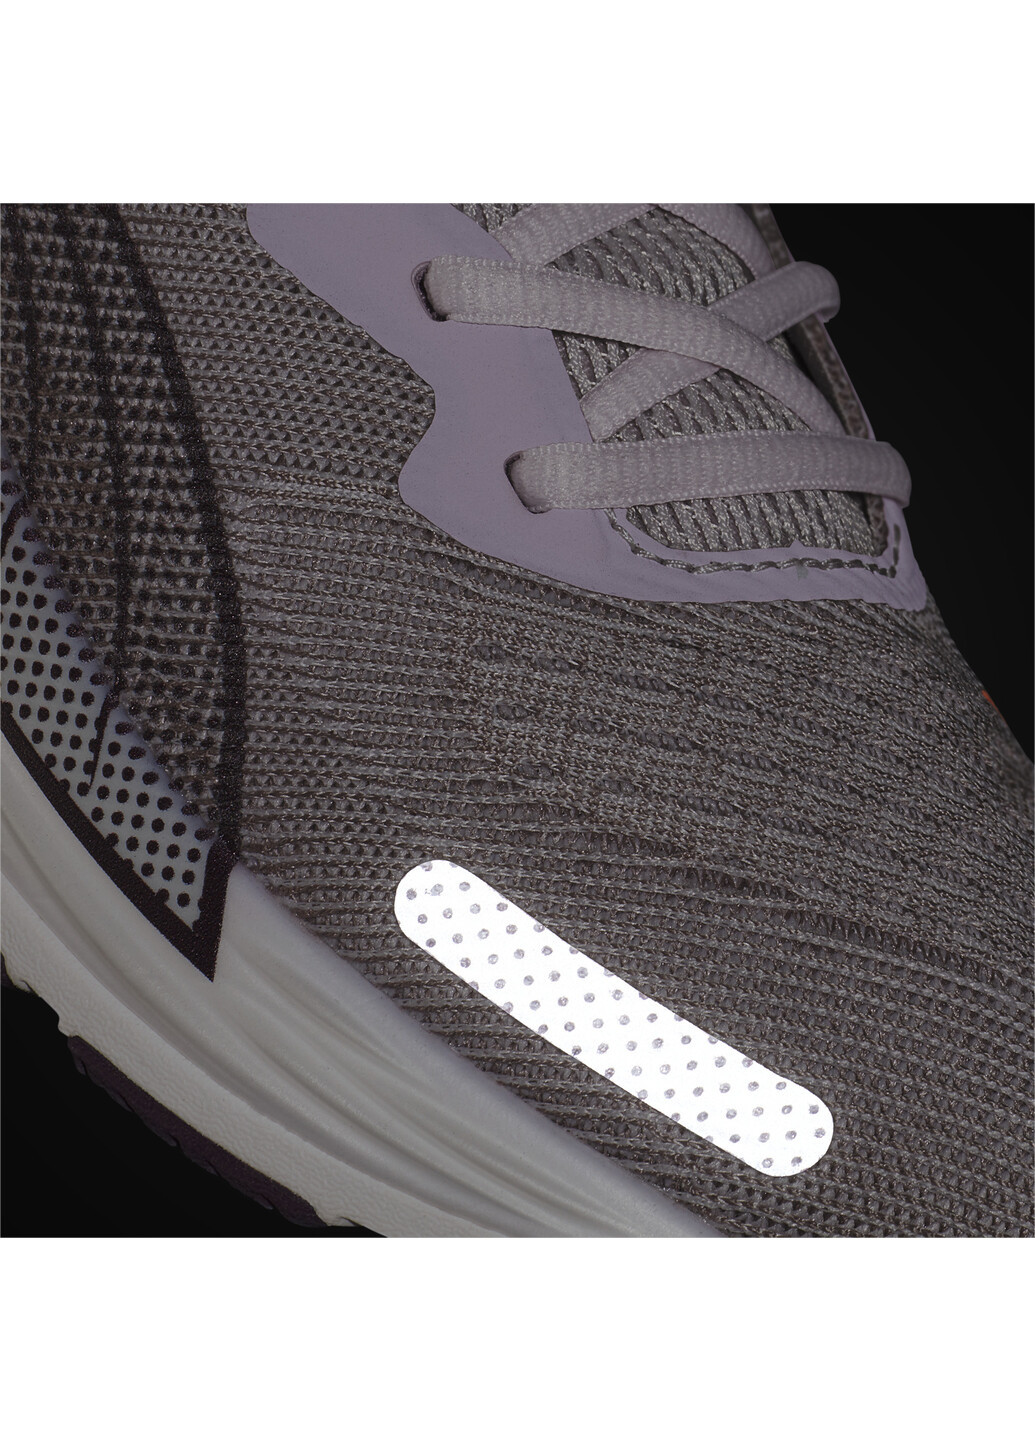 Пурпурные всесезонные кроссовки velocity nitro 2 women’s running shoes Puma